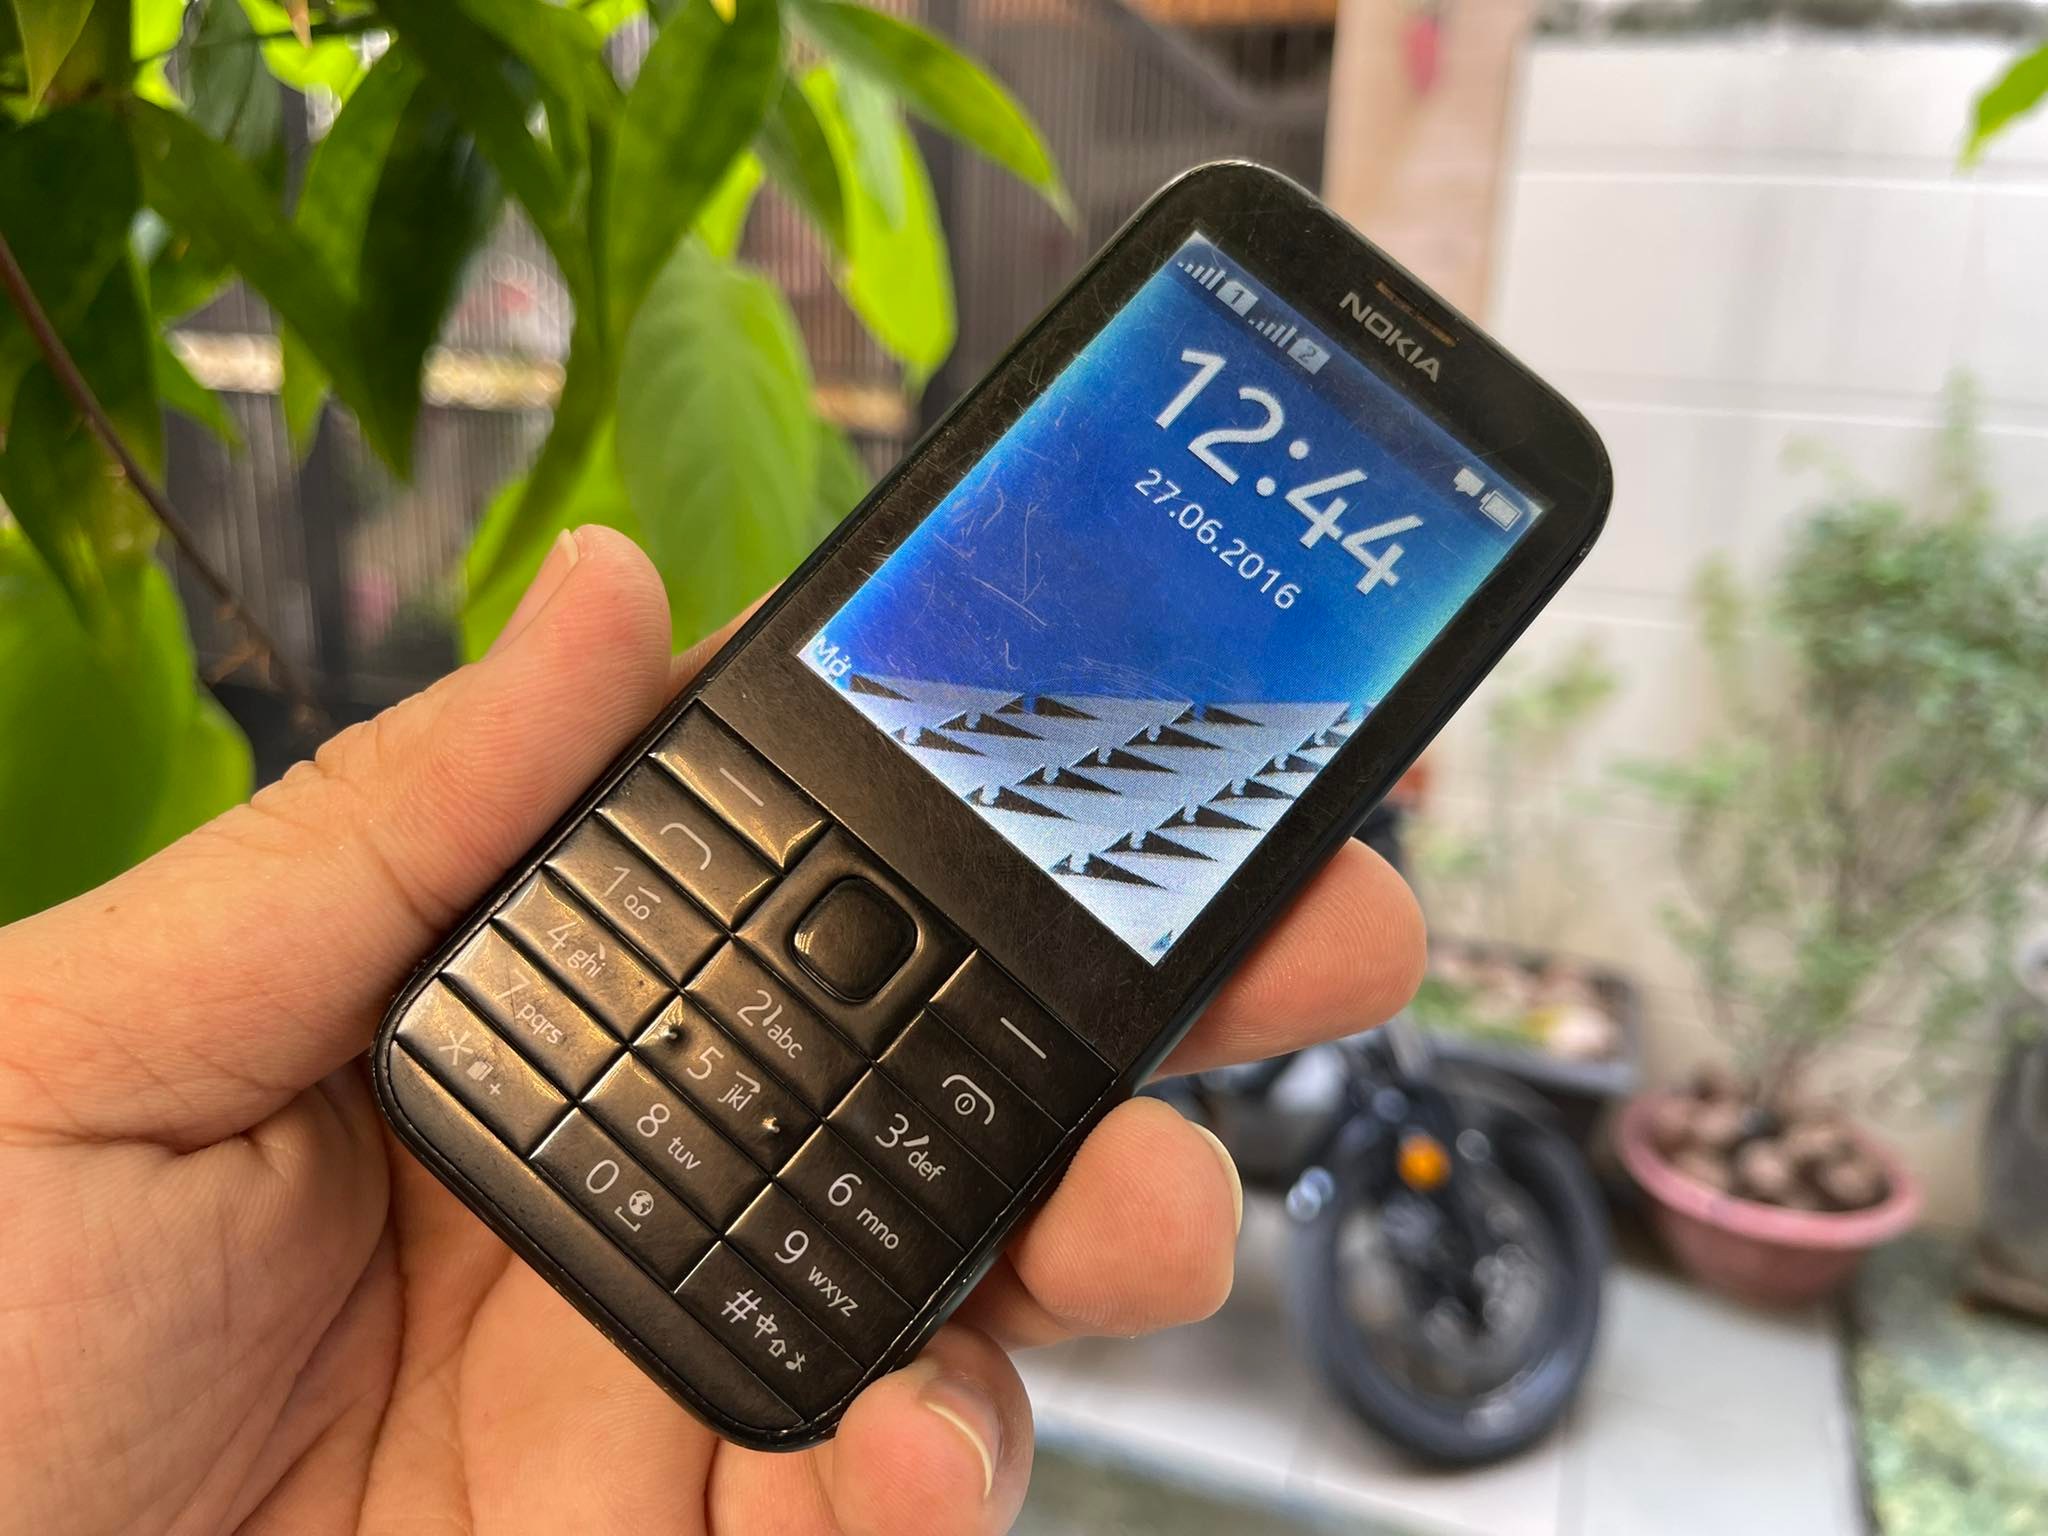 Điện thoại Nokia 225 2 sim là sự lựa chọn tuyệt vời cho những người thường xuyên phải sử dụng hai sim. Với màn hình lớn và tính năng vượt trội, bạn sẽ có được trải nghiệm vô cùng tiện lợi và thú vị.